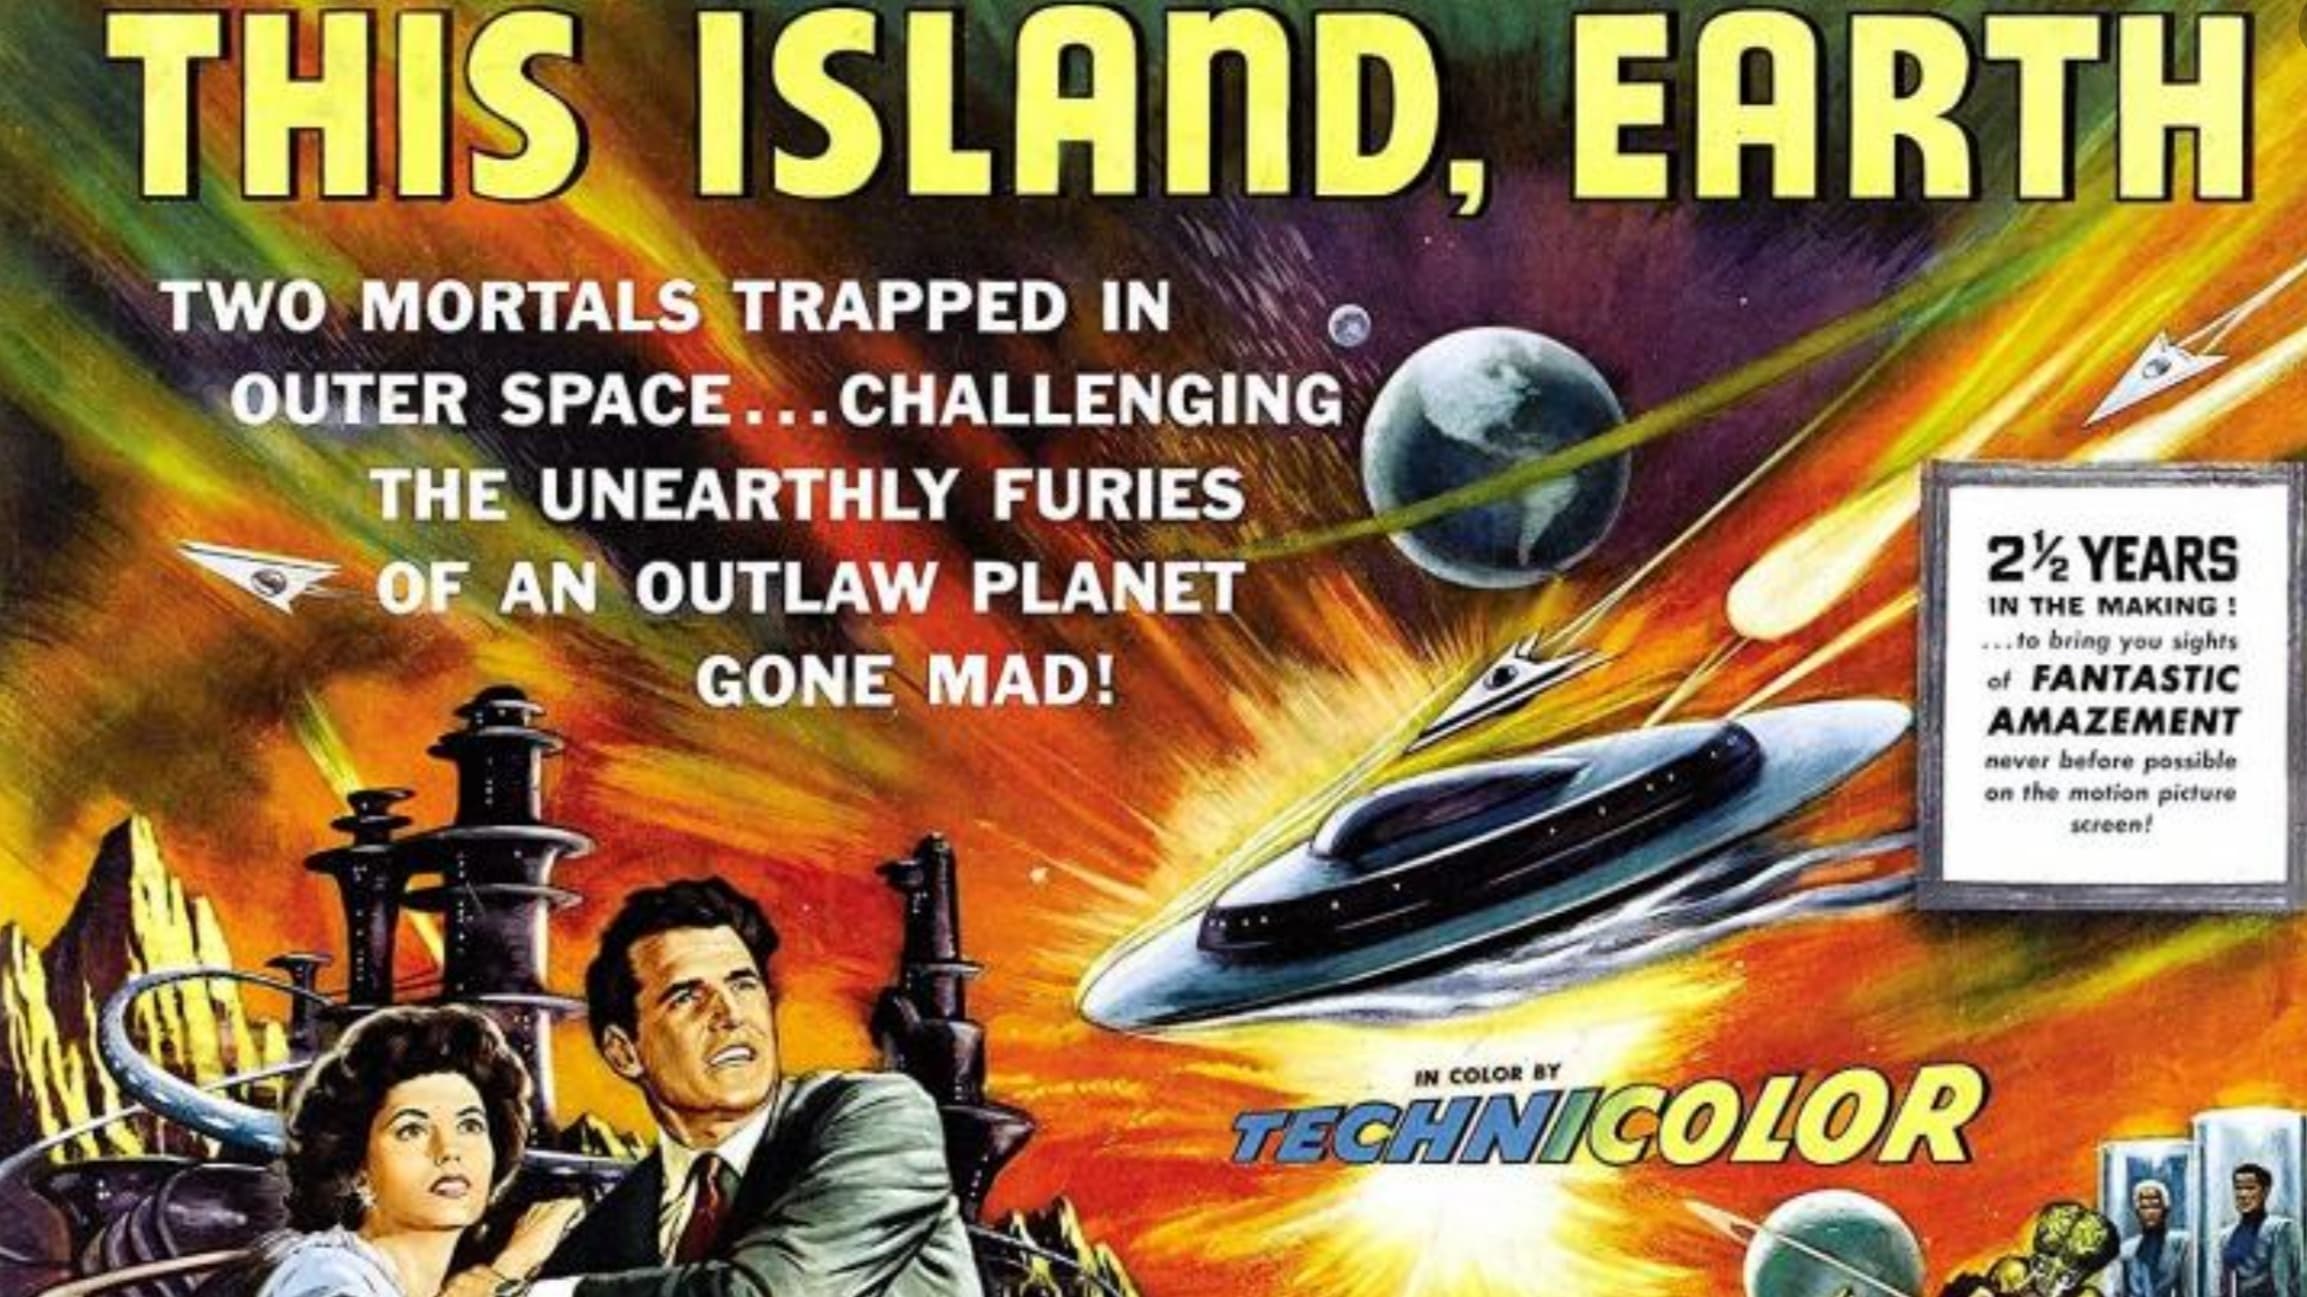 Этот остров Земля (1955)